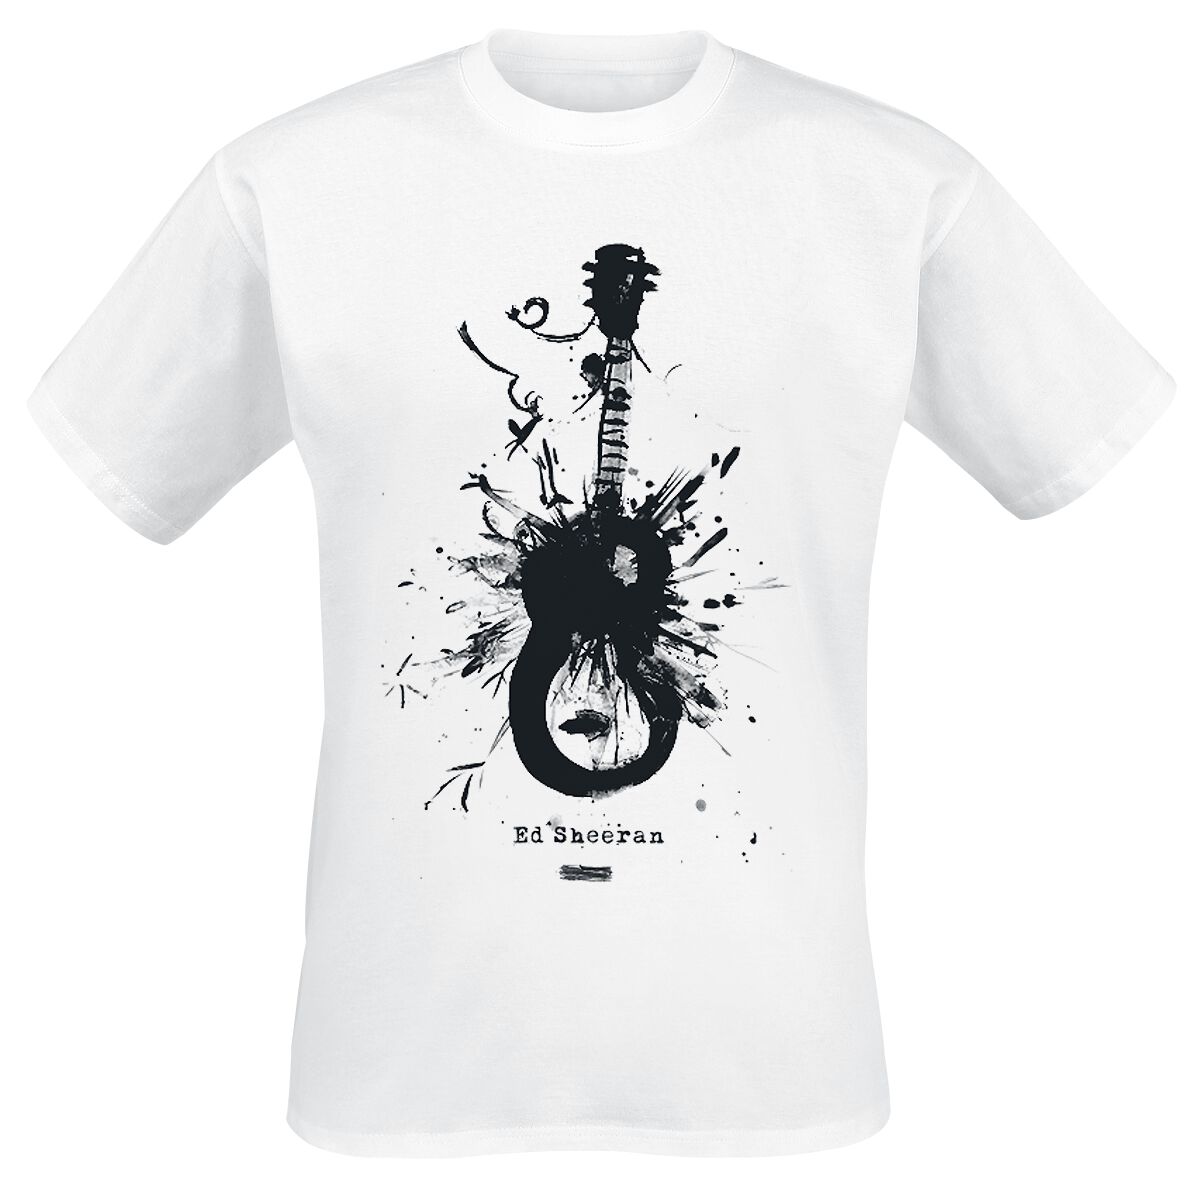 T-Shirt Manches courtes de Ed Sheeran - No Strings Spark - S à XXL - pour Homme - blanc